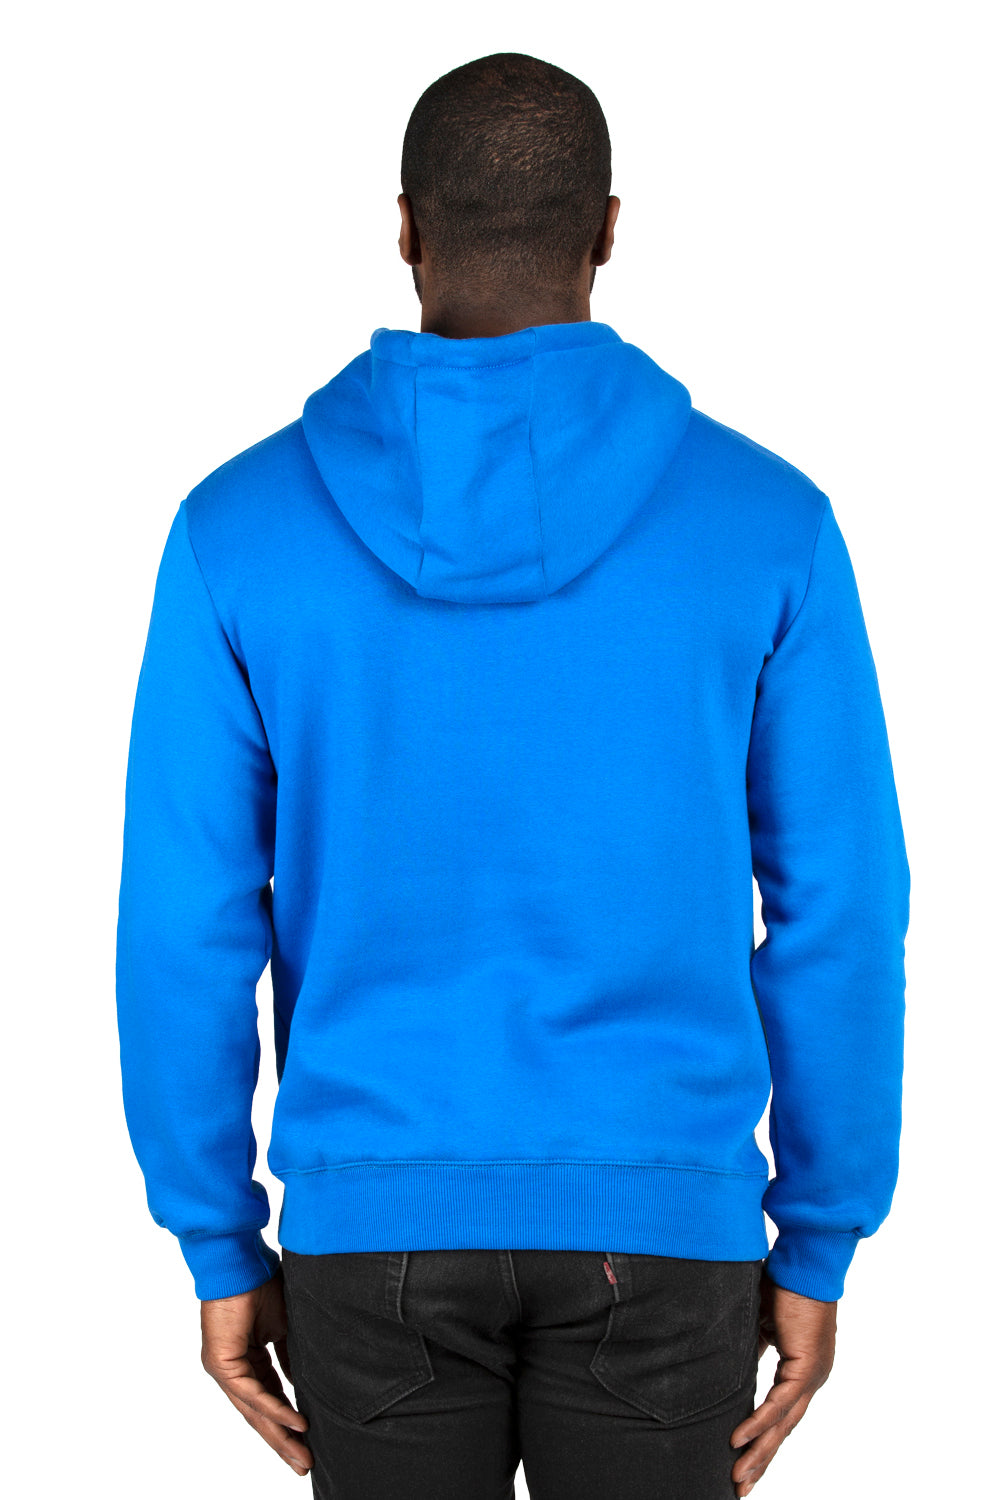 Threadfast Apparel 320H Mens Ultimate Fleece Hooded Sweatshirt Hoodie Royal Blue Back